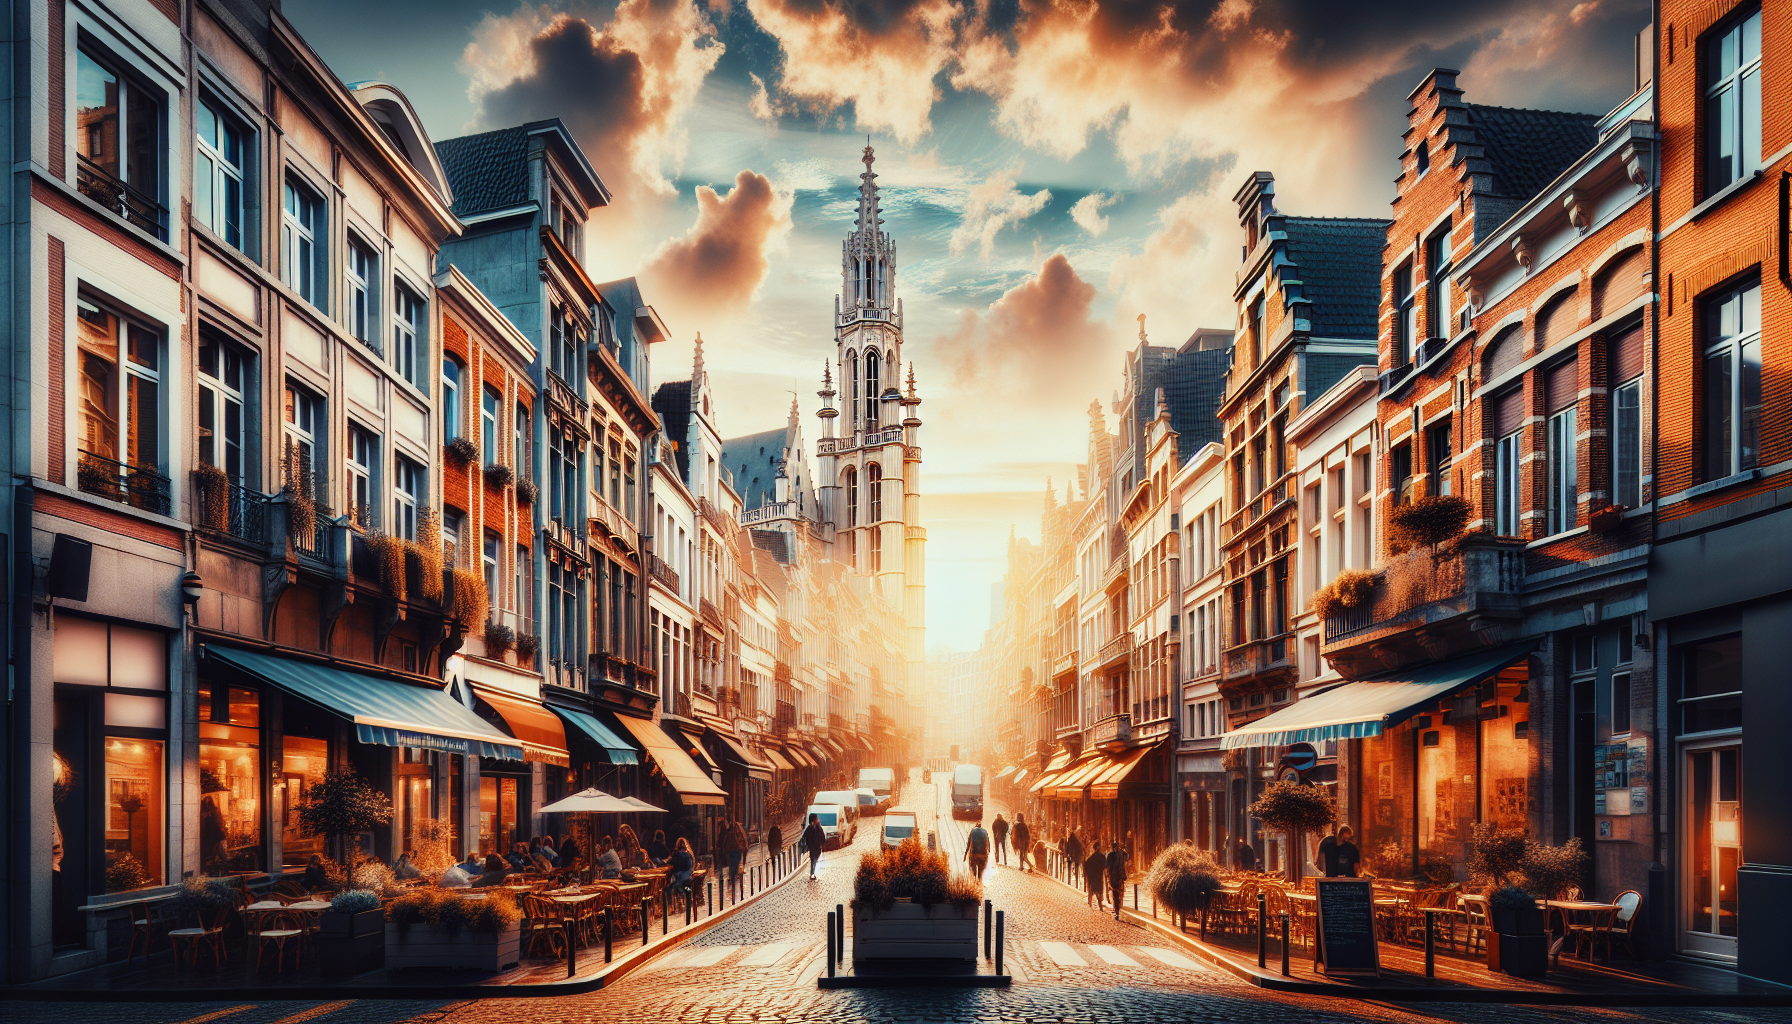 découvrez le guide complet pour choisir le quartier idéal où déménager à bruxelles. trouvez le quartier parfait pour votre style de vie et vos préférences dans la capitale belge.